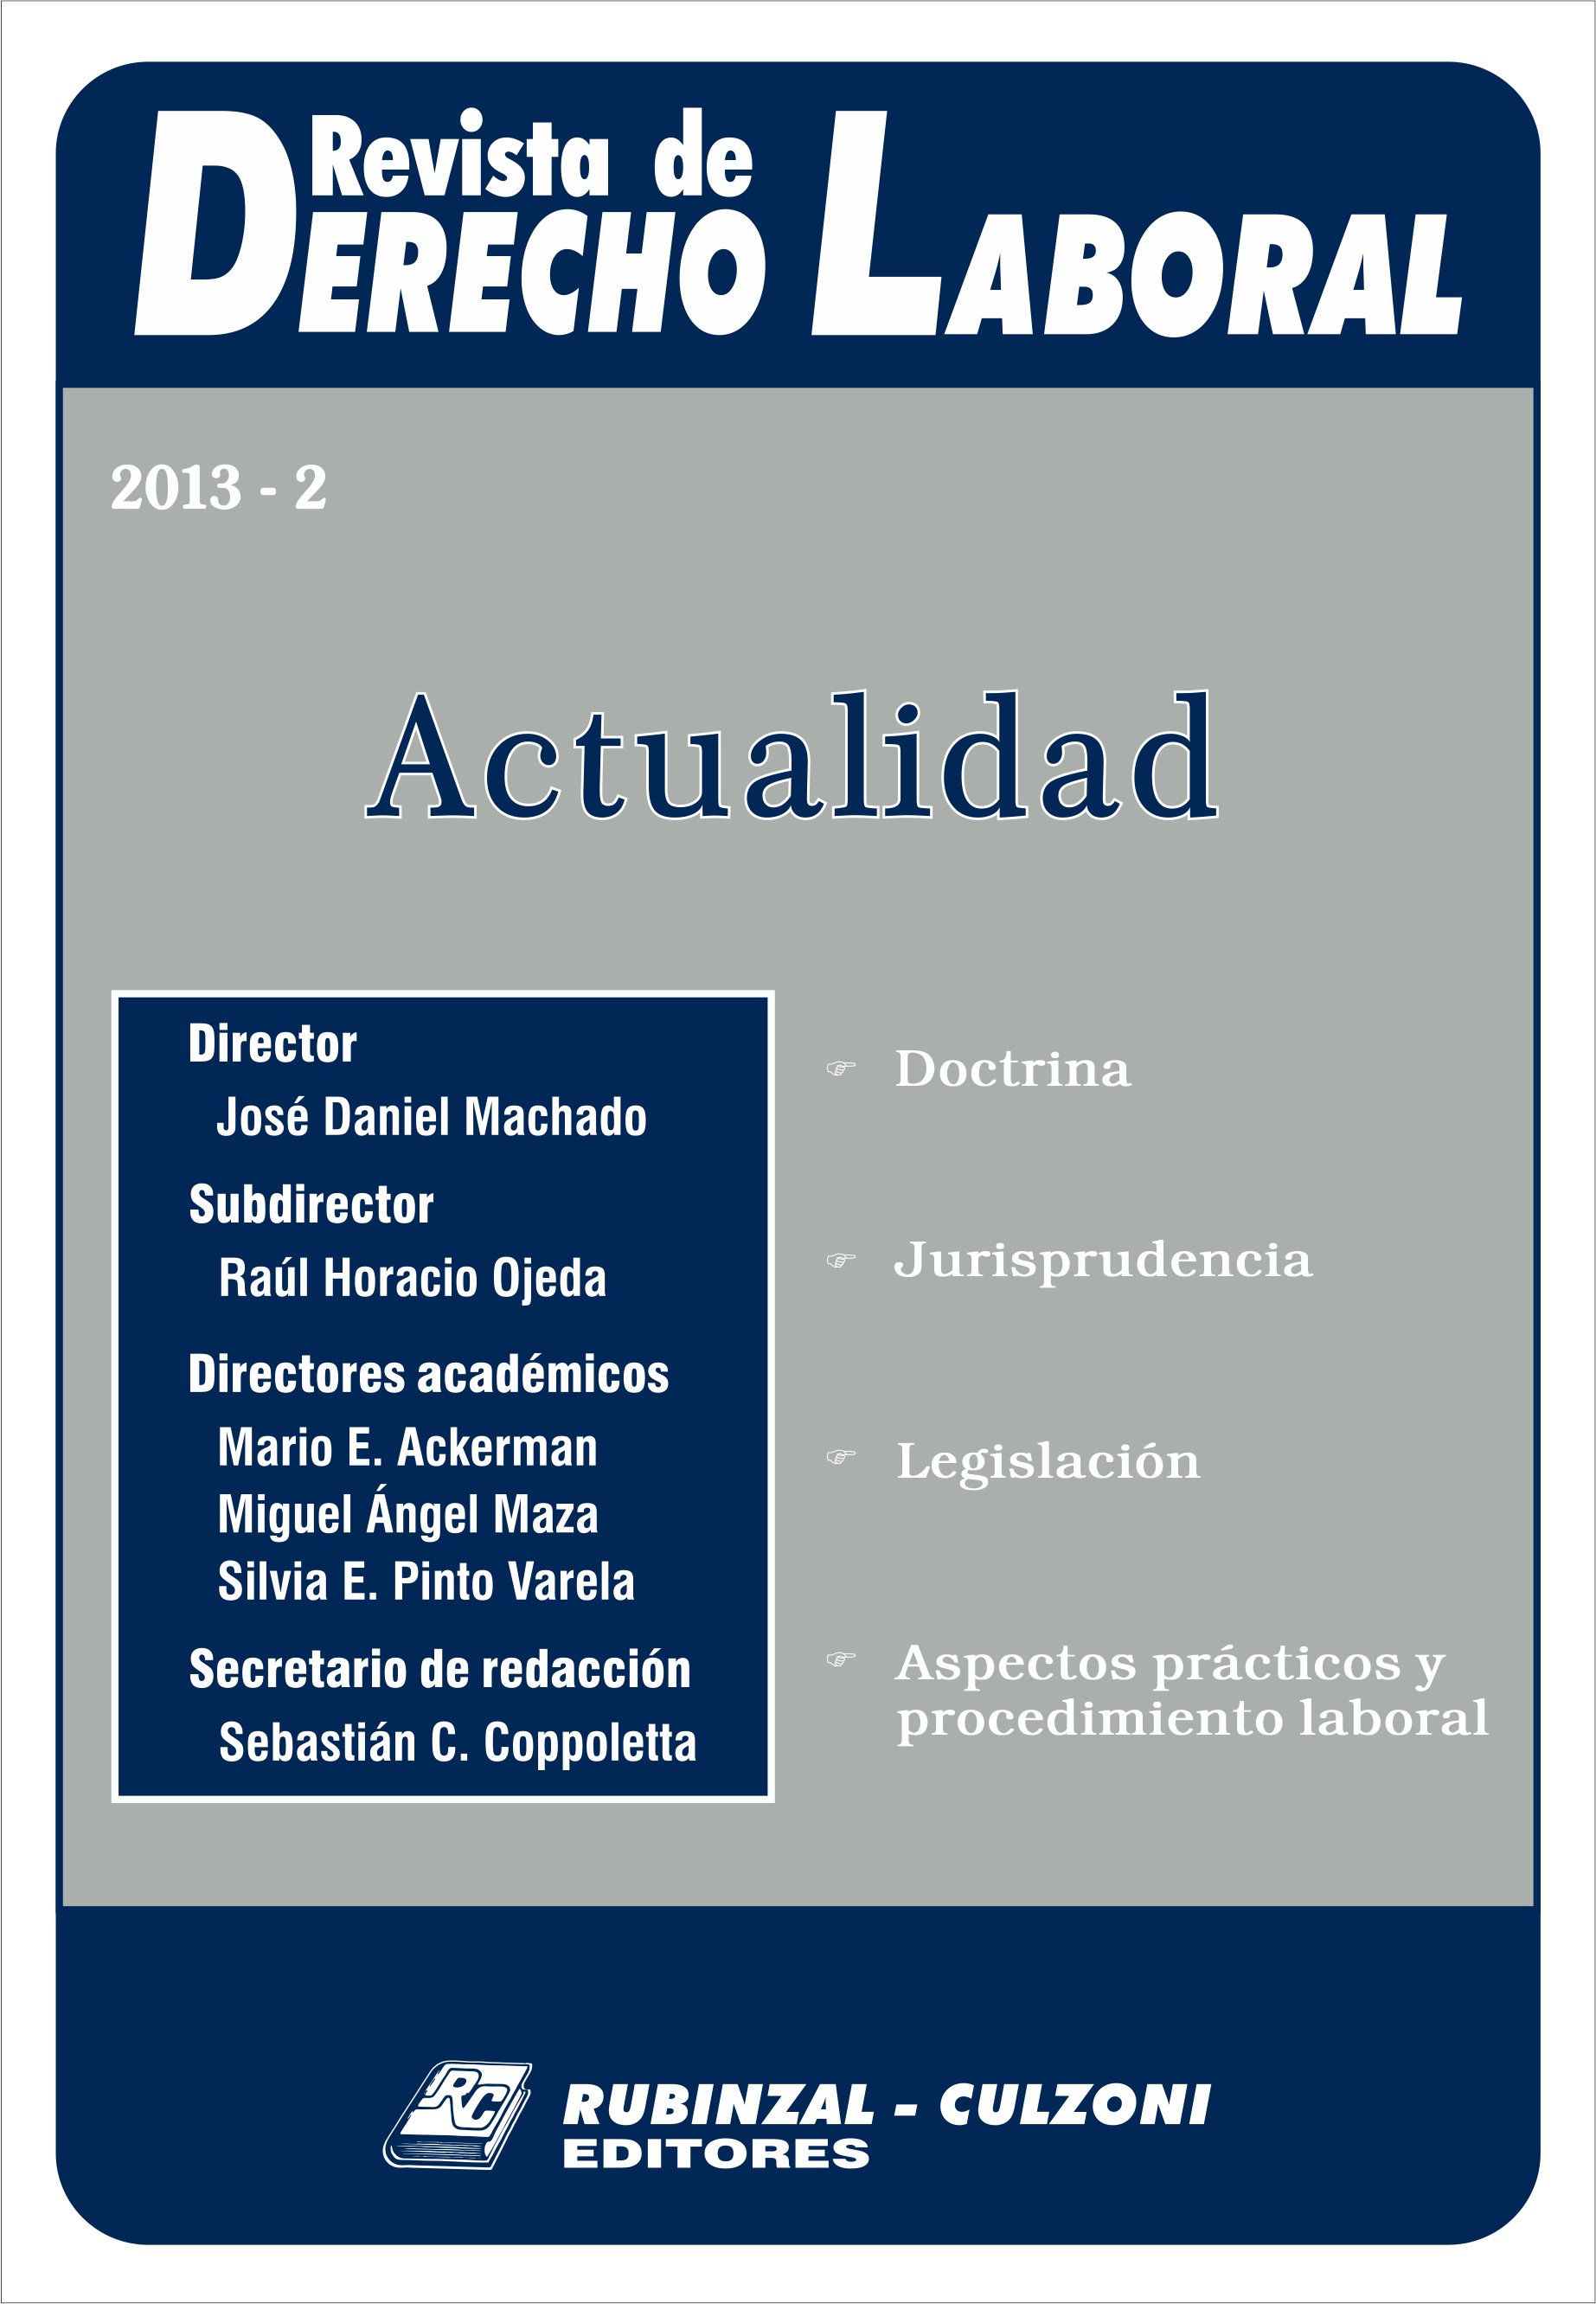 Revista de Derecho Laboral Actualidad - Año 2013 - 2